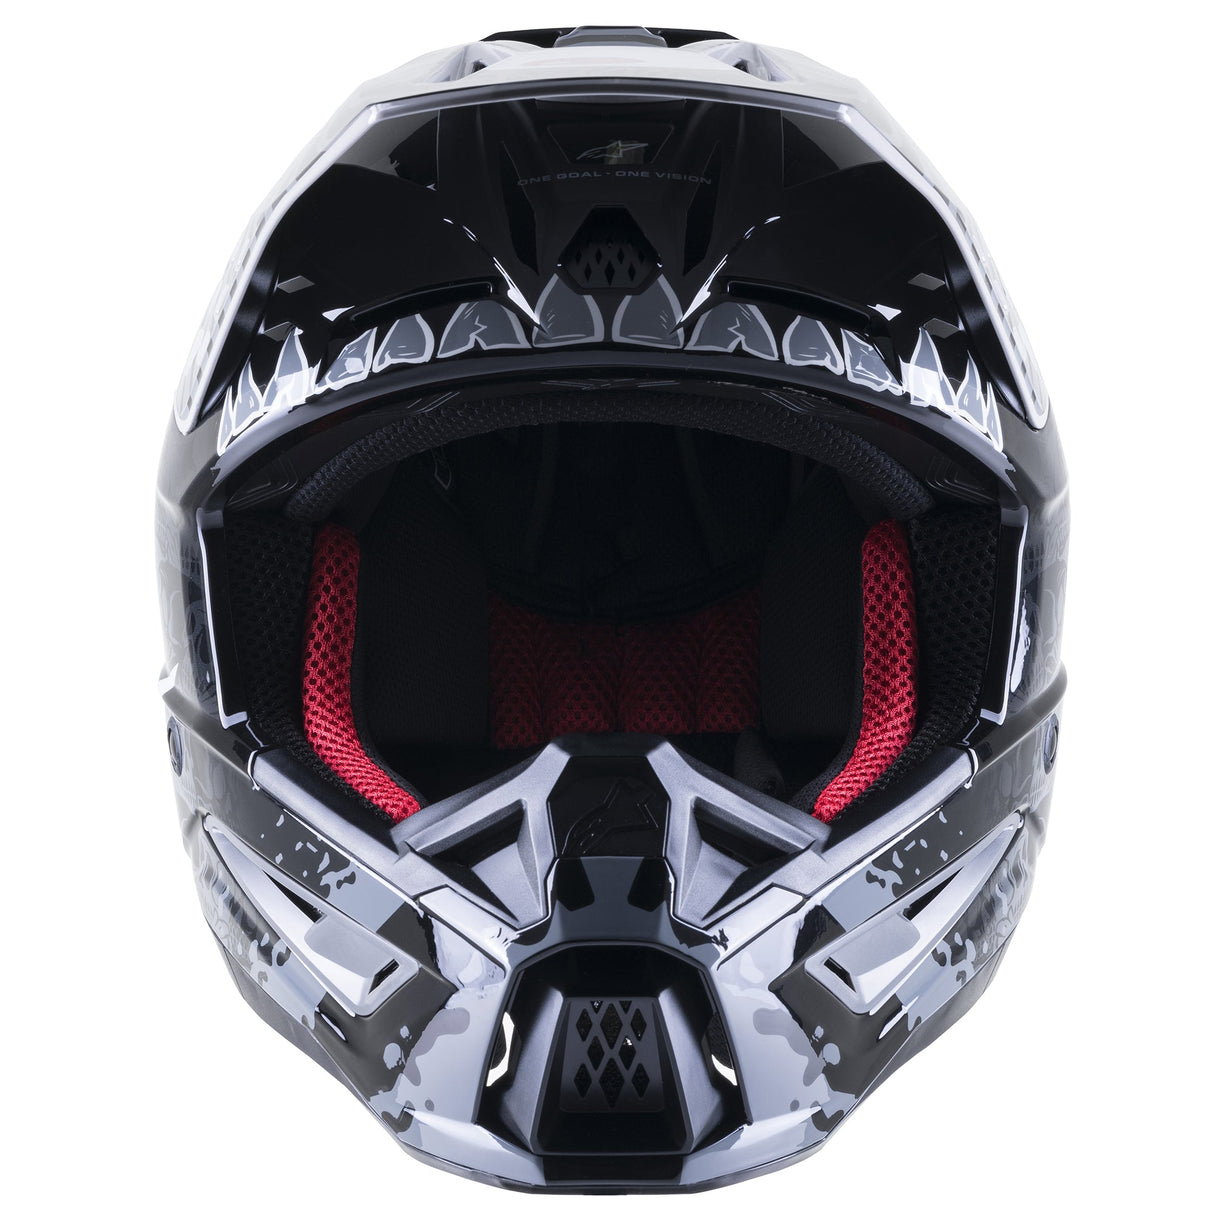 Alpinestars SM5 Solar Flare Helmet - Gloss Black Grey Cold